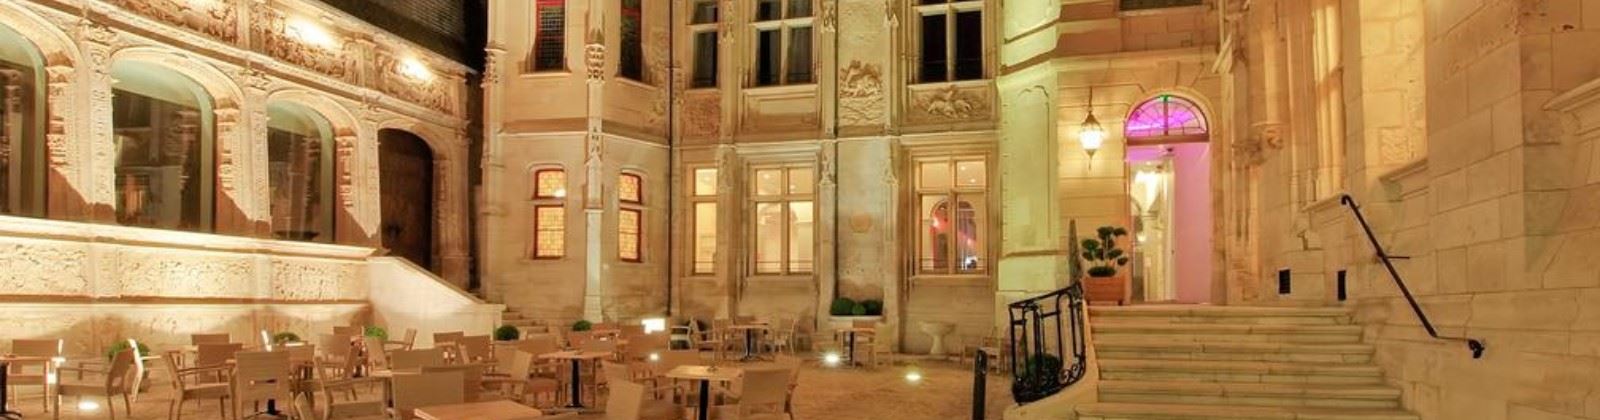 OLEVENE image - hotel-de-bourgtheroulde-olevene-restaurant-seminaire-booking-